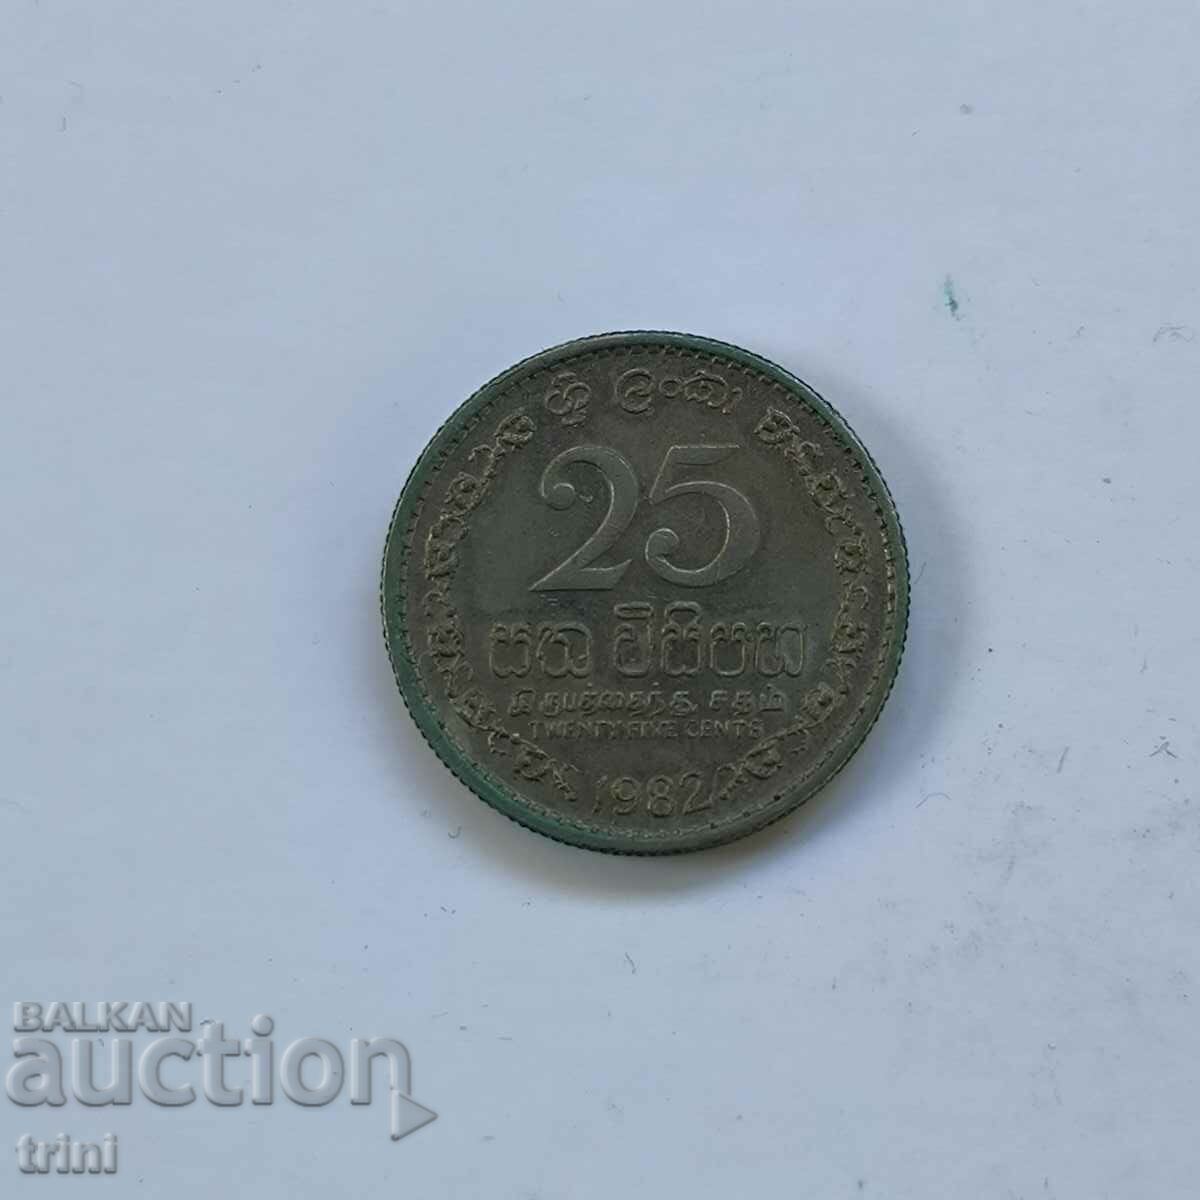 Σρι Λάνκα 25 σεντς 1982